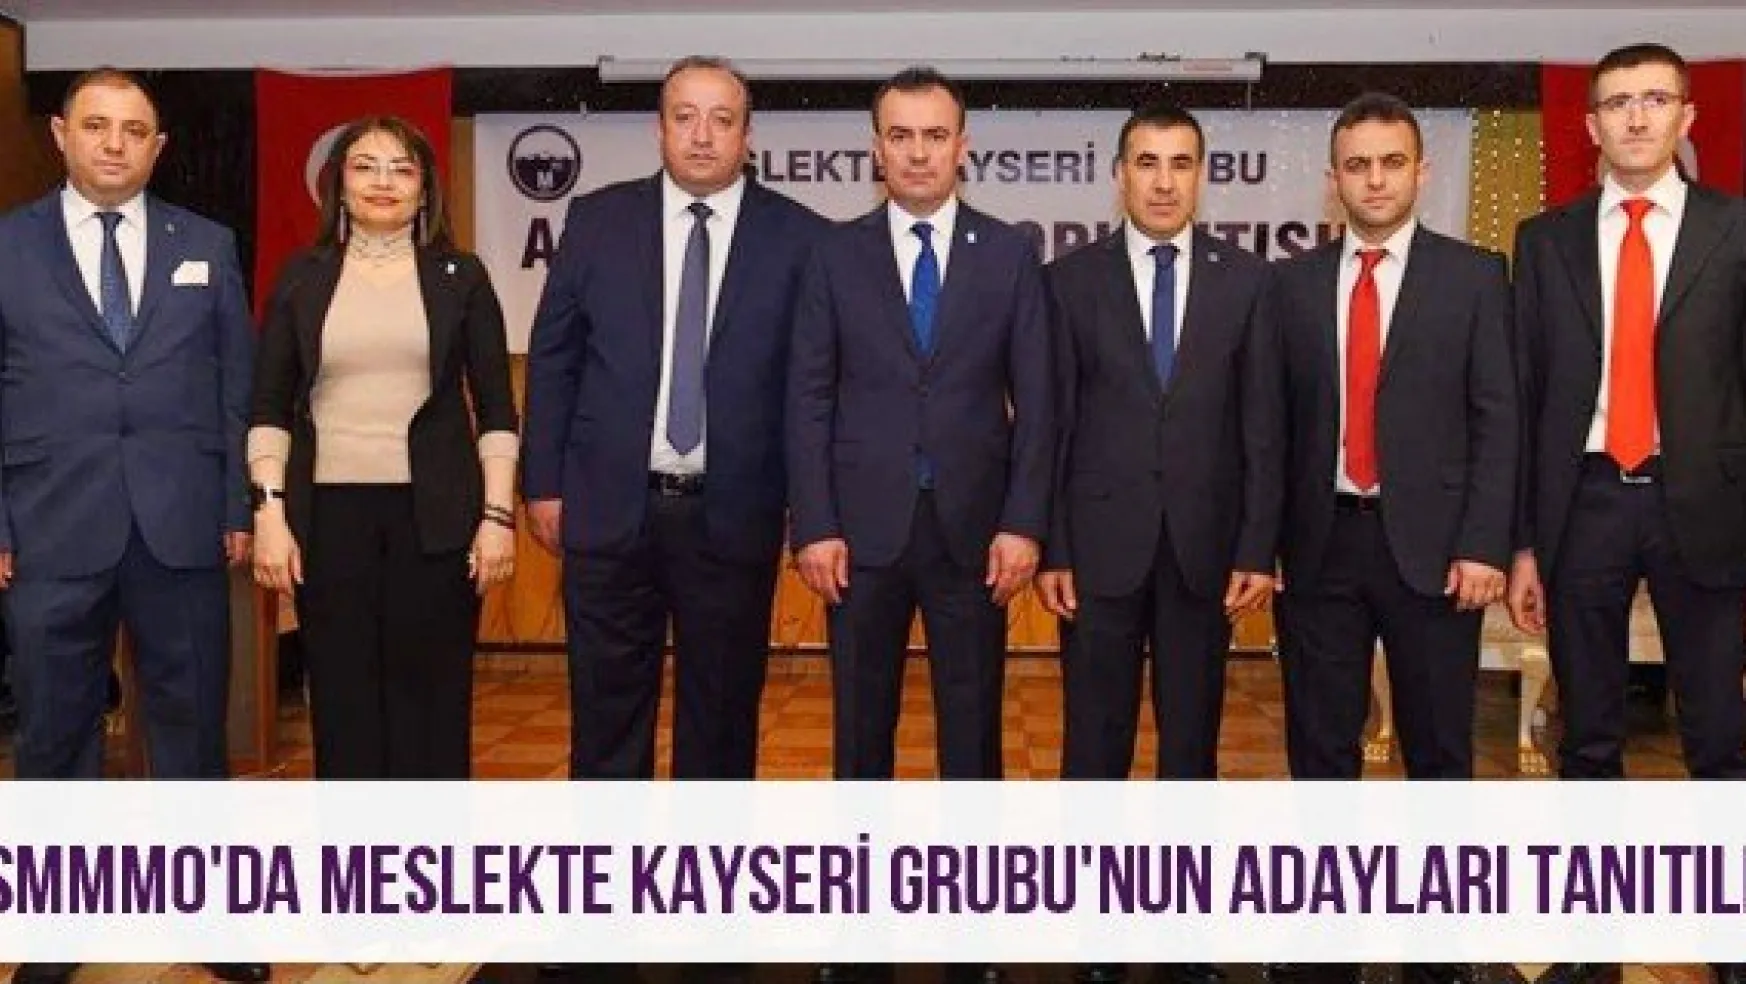 KSMMMO'da Meslekte Kayseri Grubu'nun adayları tanıtıldı